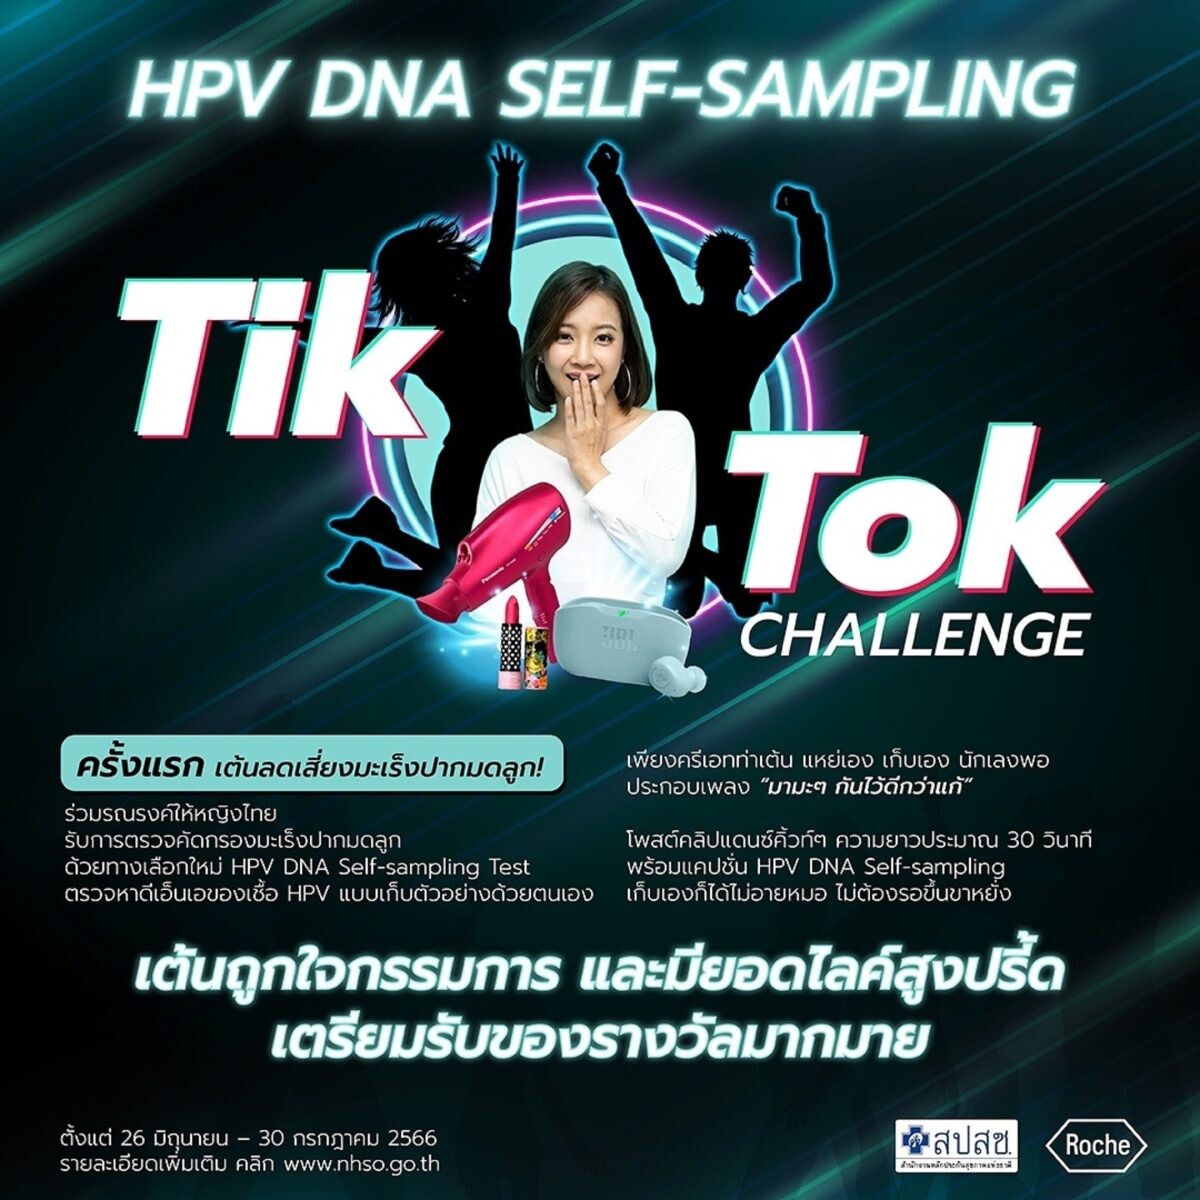 สปสช. จับมือ โรช ไดแอกโนสติกส์ นำร่องจัดแคมเปญ "มามะๆ มาตรวจคัดกรองมะเร็งปากมดลูก" ผ่านแพลตฟอร์ม TikTok รณรงค์หญิงไทยเข้ารับการตรวจคัดกรองฯ HPV DNA Self-Sampling